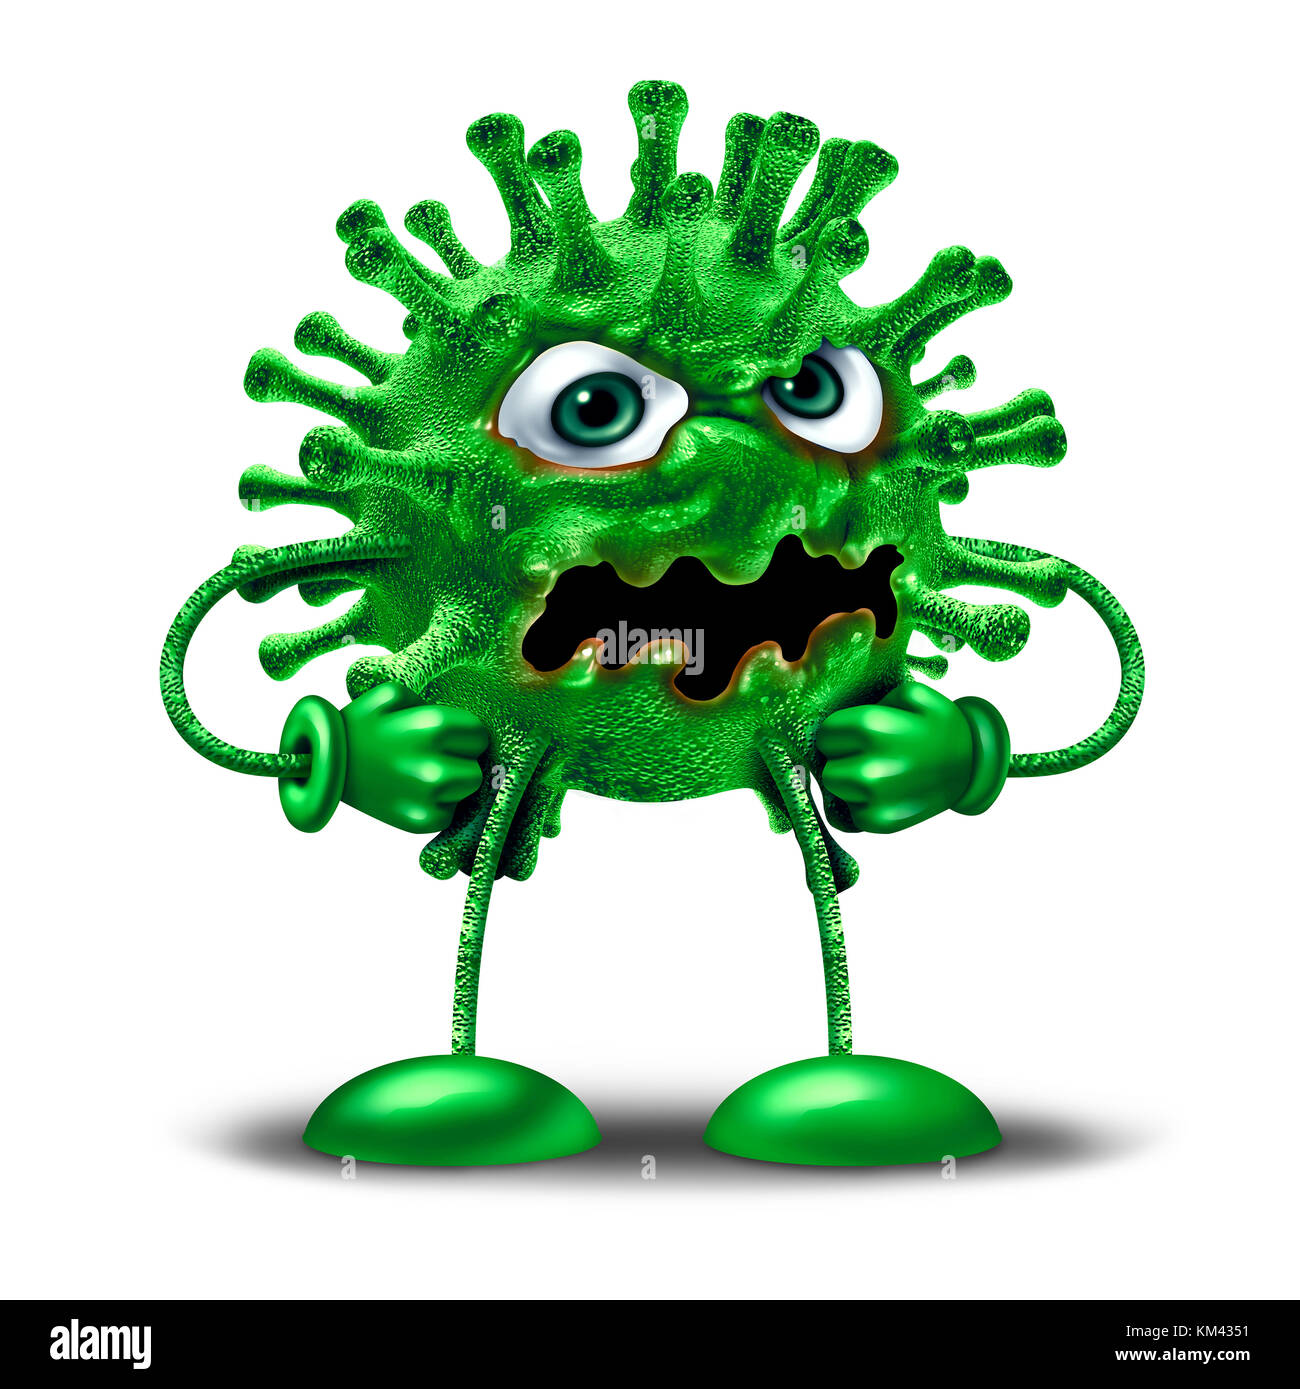 Personnage de virus de dessin animé comme créature de monstre de maladie verte comme médicament de santé ou symbole de pathologie médicale comme icône clip art pathogène. Banque D'Images